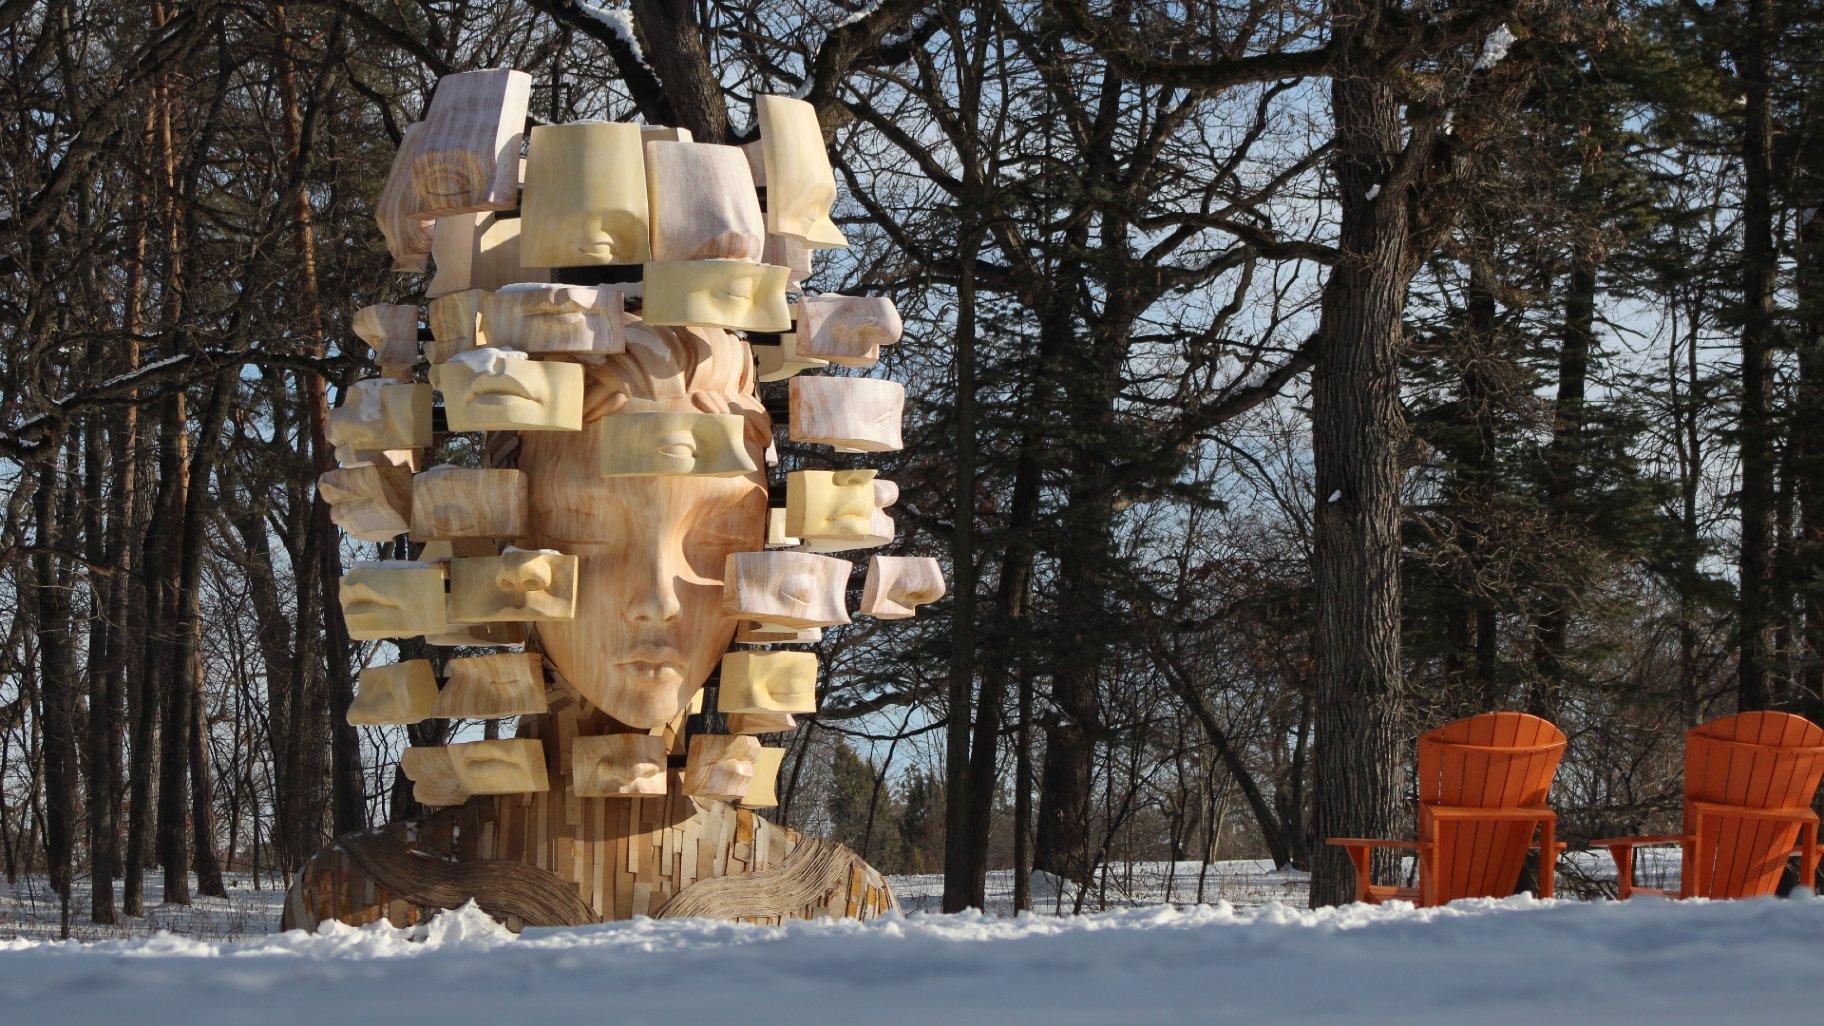 One of artist Daniel Popper’s towering sculptures at the Morton Arboretum. (Courtesy of the Morton Arboretum)